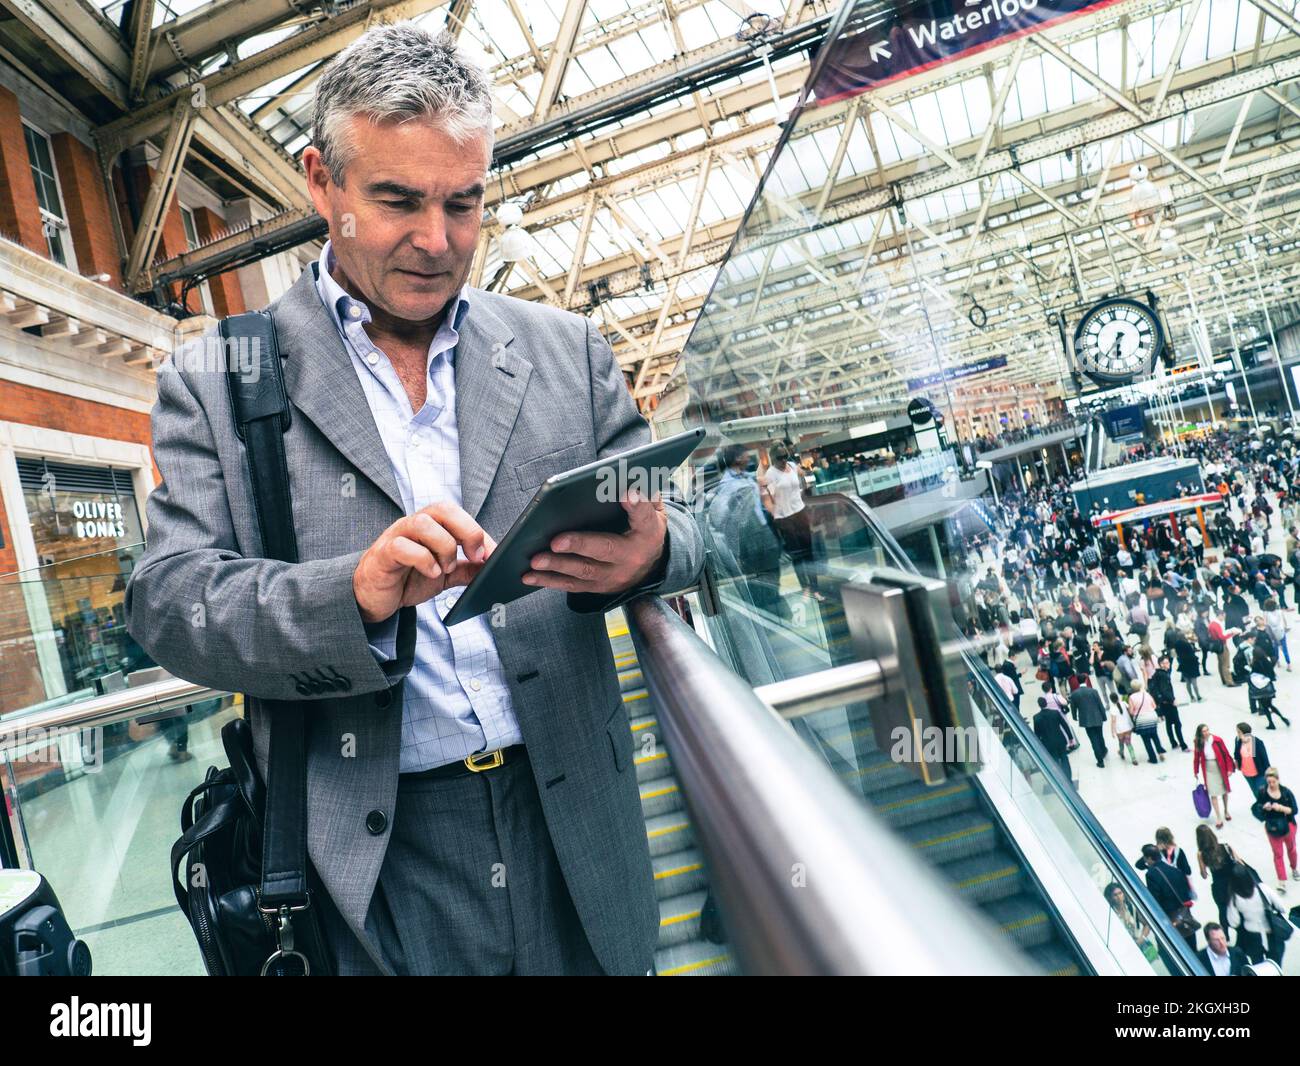 IPad Geschäftsmann mit Smart Tablet auf geschäftigen Pendlern Pendelbahn Waterloo Station Bahnhofshalle mit Uhr, Geschäft unterwegs. London Großbritannien Stockfoto